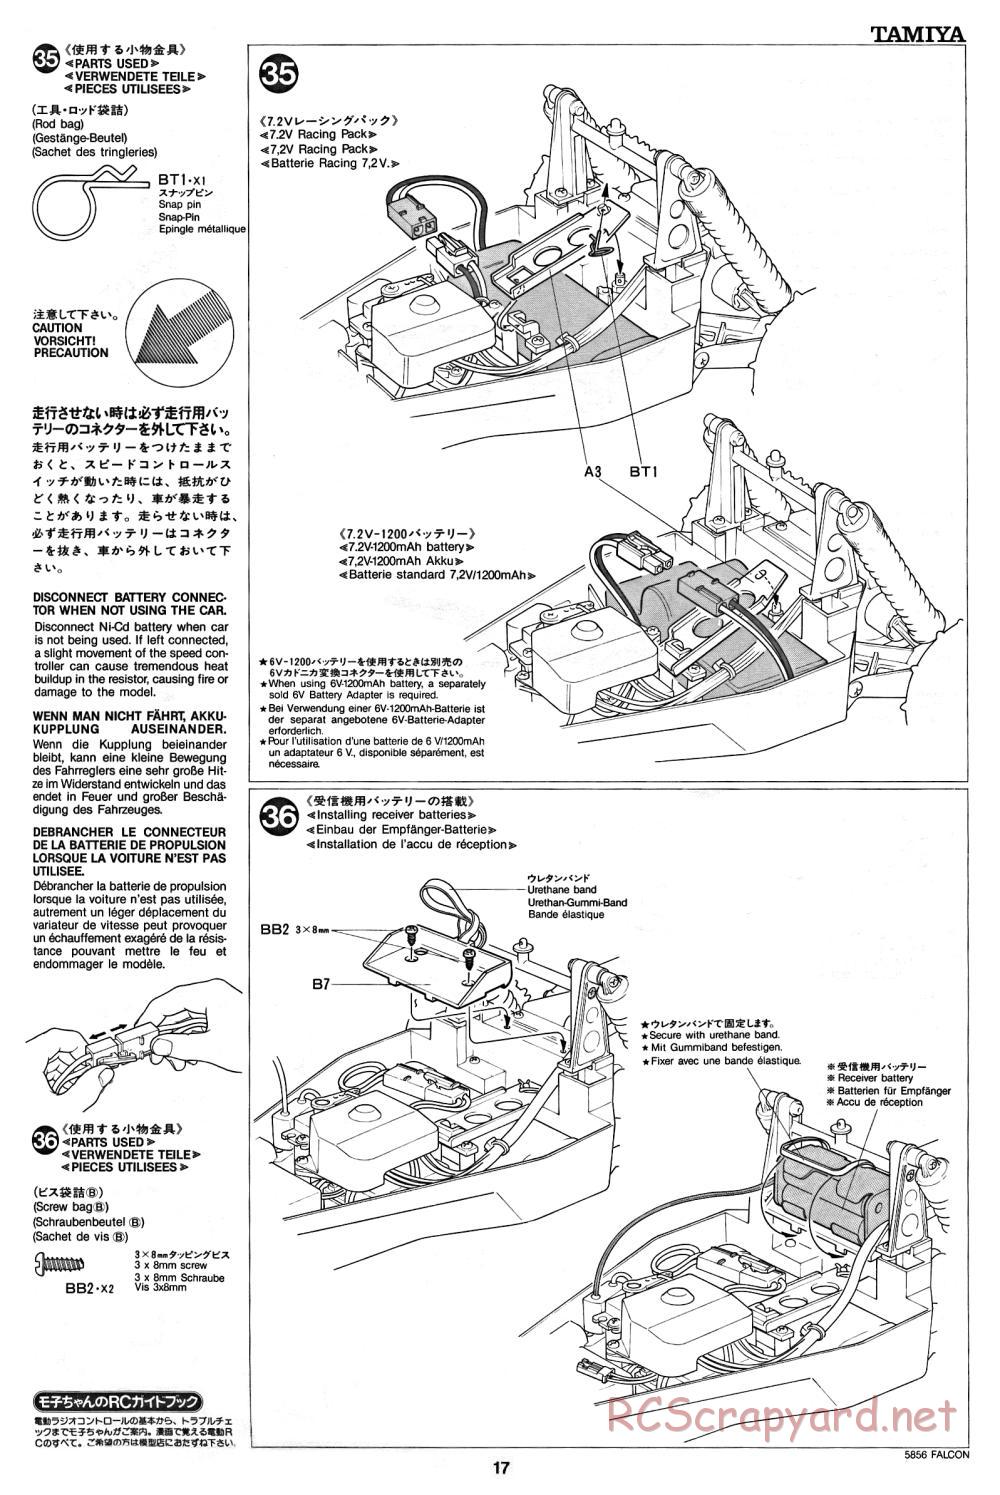 Tamiya - The Falcon - 58056 - Manual - Page 17